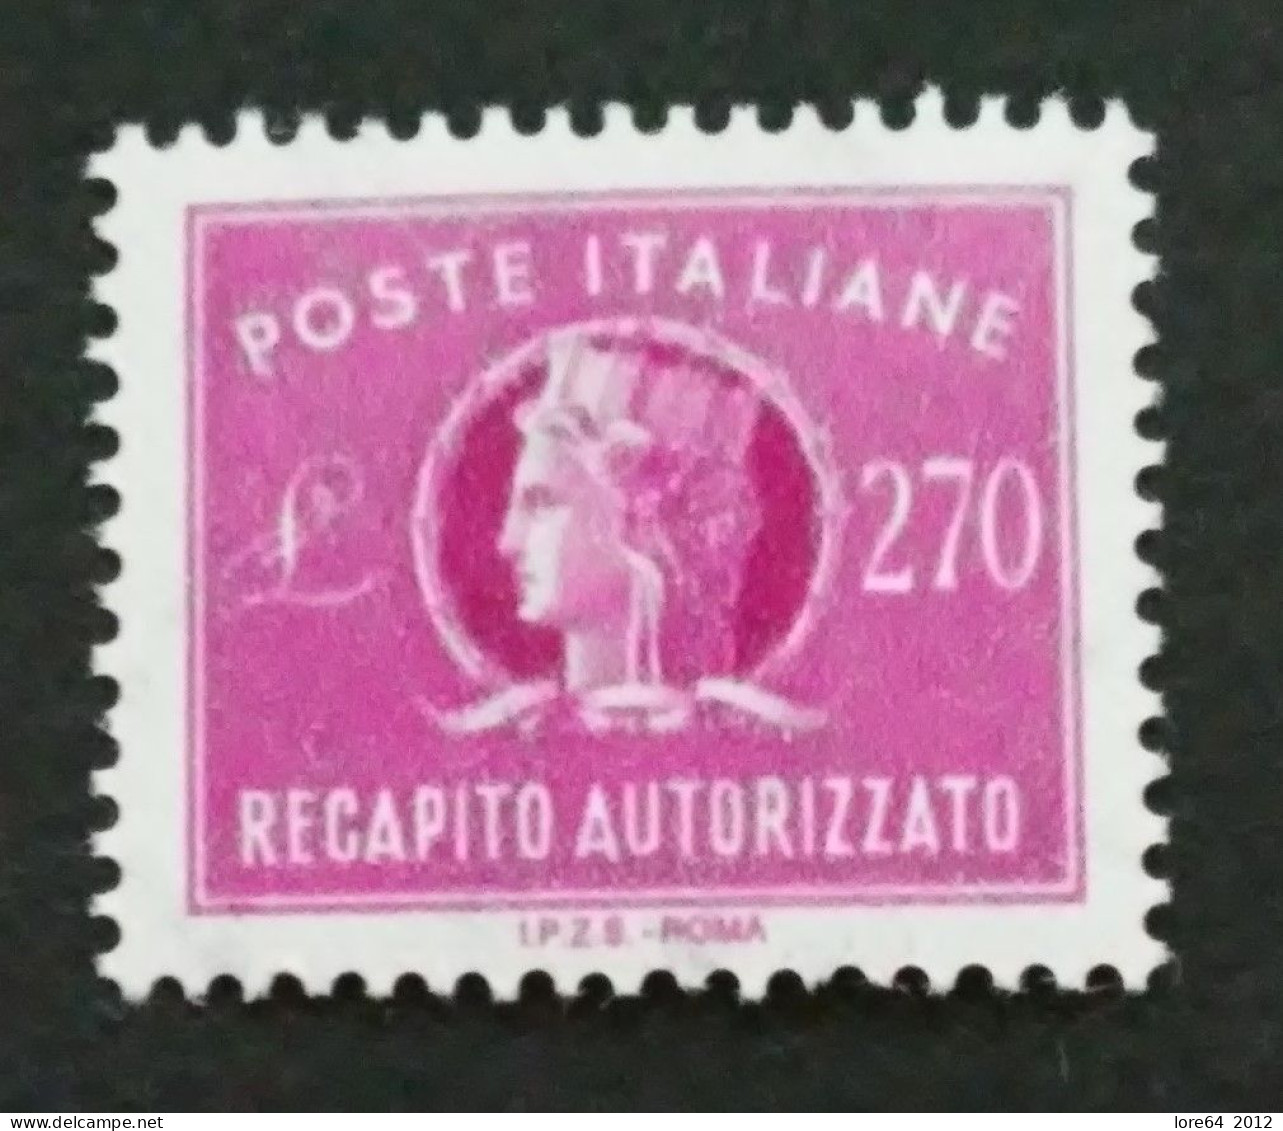 ITALIA 1984 - Recapito Autorizzato N° Catalogo Unificato 16 Nuovo** - Express-post/pneumatisch